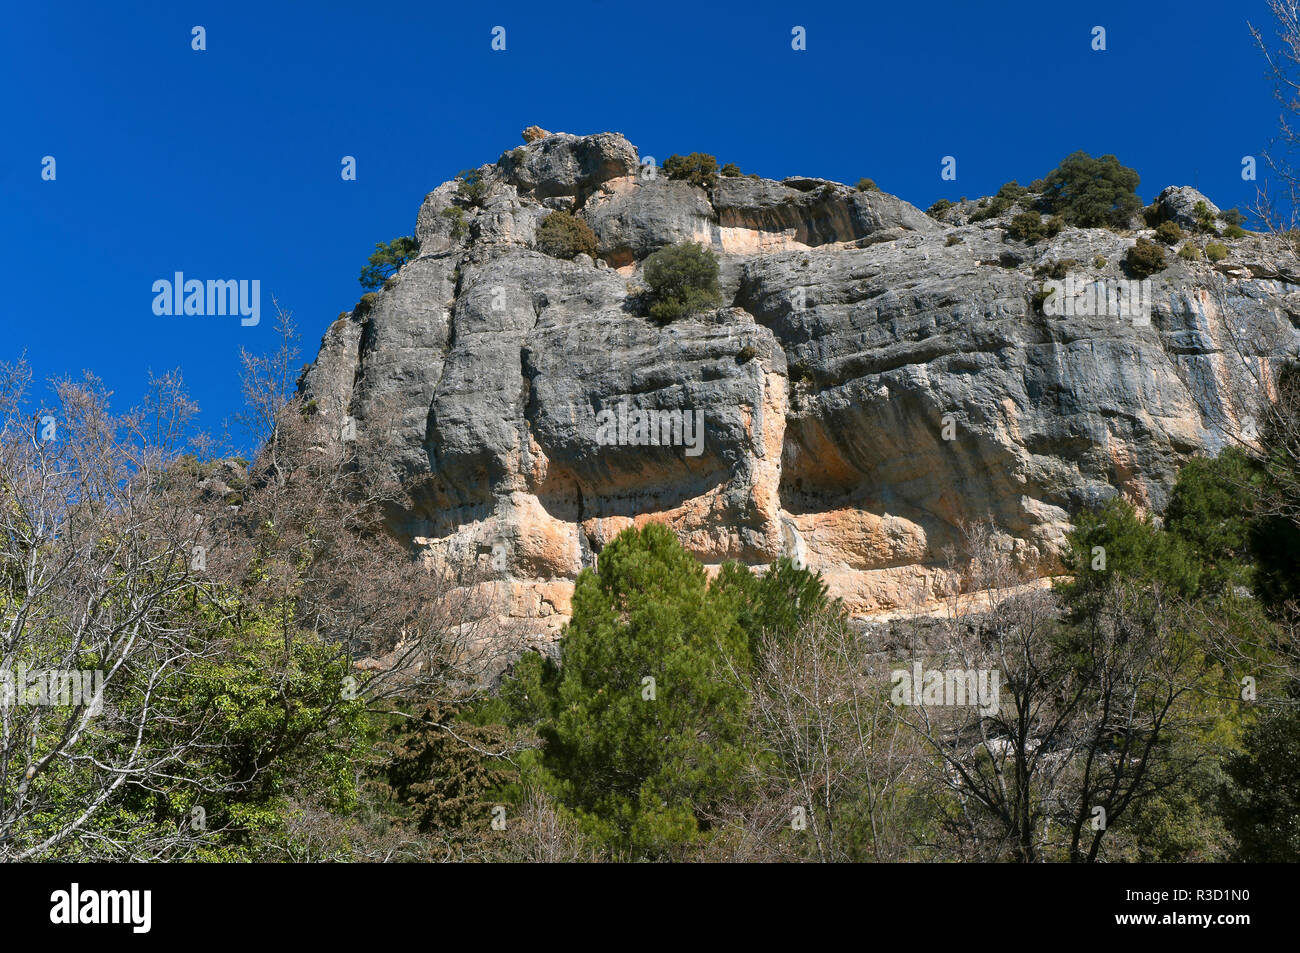 Paesaggio roccioso, parco naturale della Sierras de Cazorla Segura y Las Villas, Jaen-provincia, regione dell'Andalusia, Spagna; Europa Foto Stock